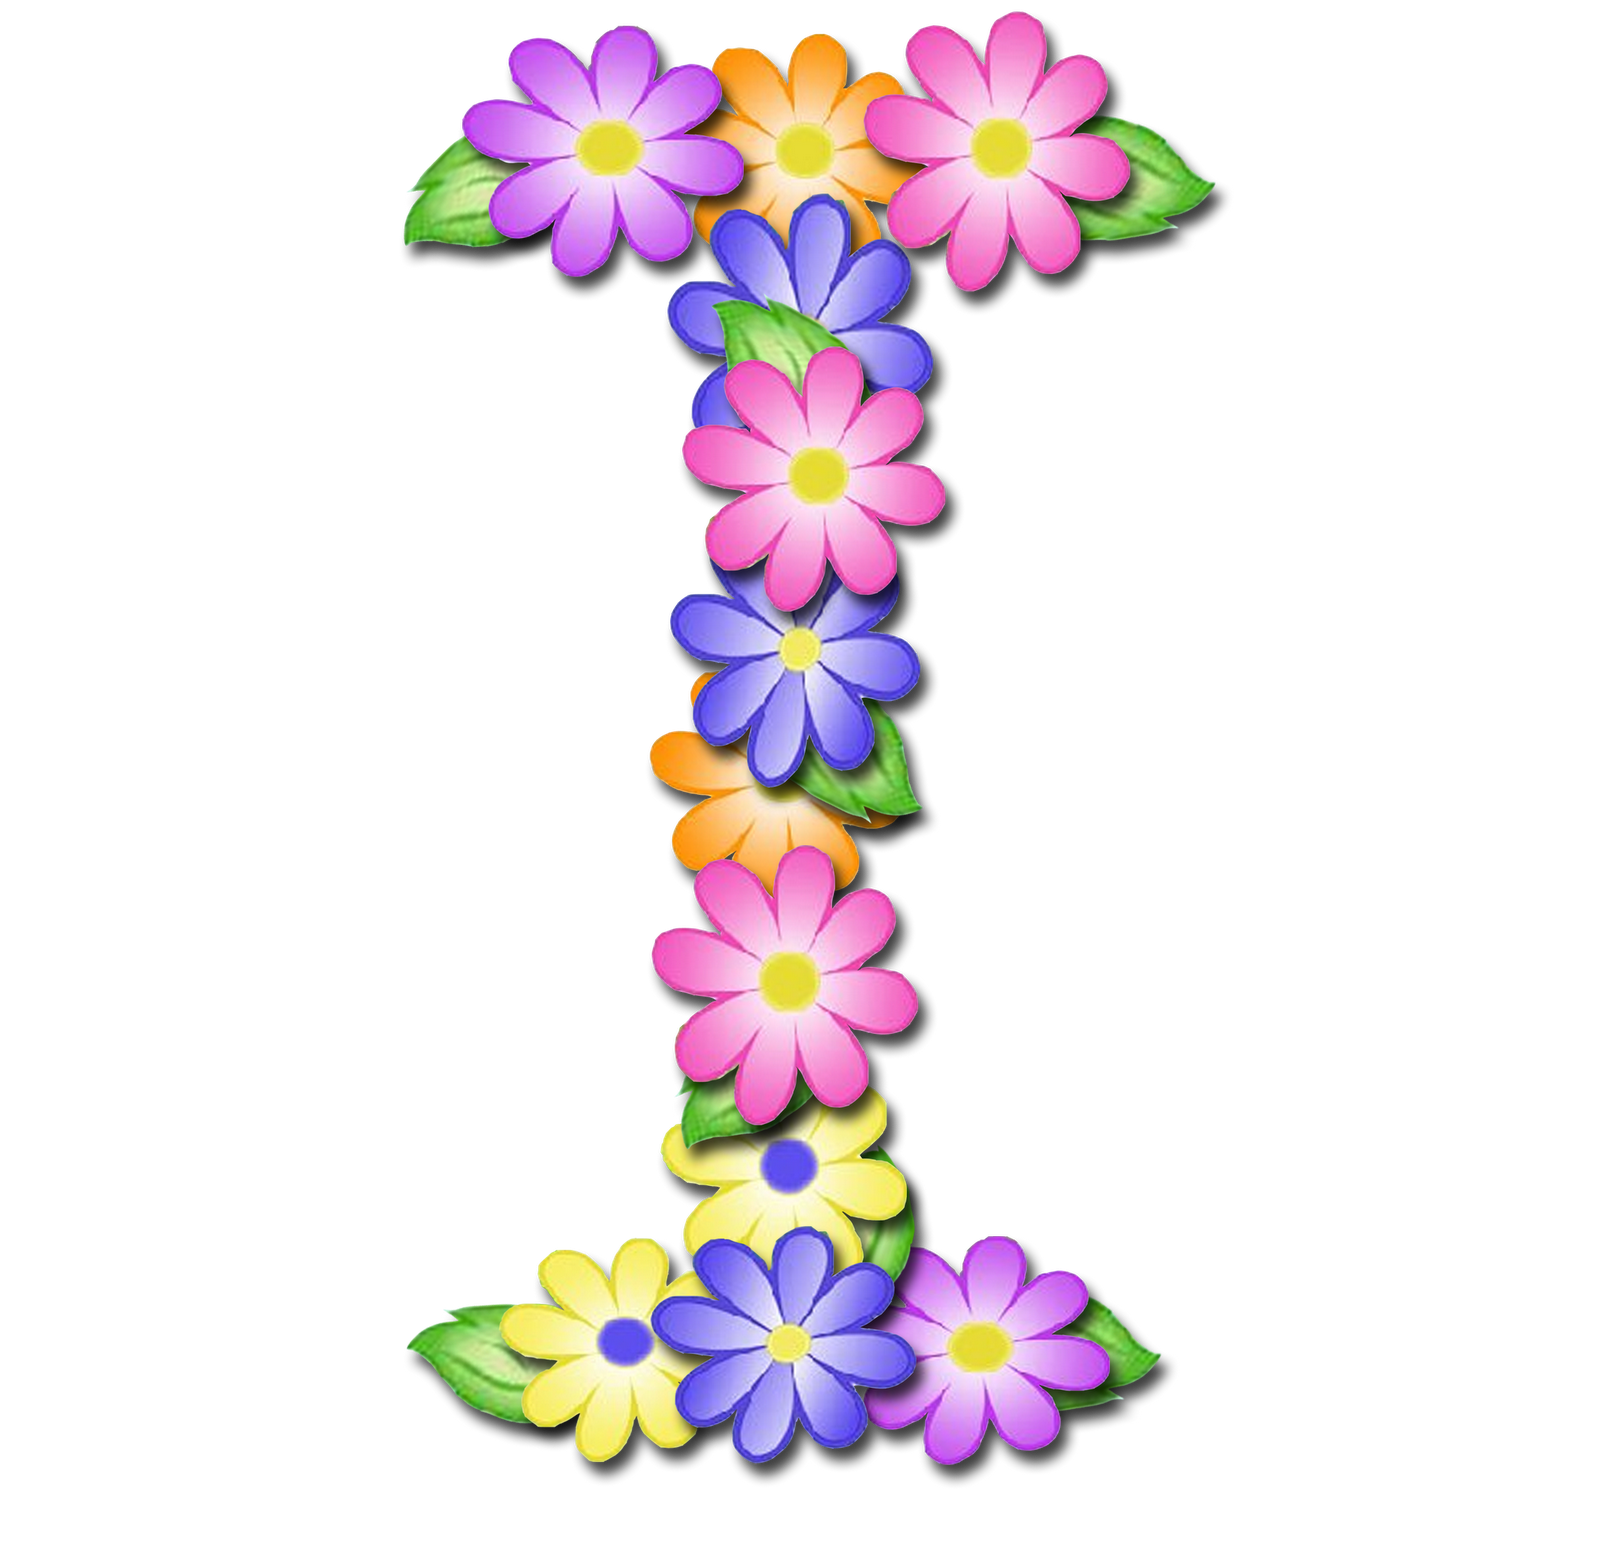 صور الحروف الإنجليزية بأجمل الزهور والورود بخلفية شفافة بنج png وجودة عالية للمصممين :: إبحث عن حروف إسمك بالإنجليزية P_1699e4eu89